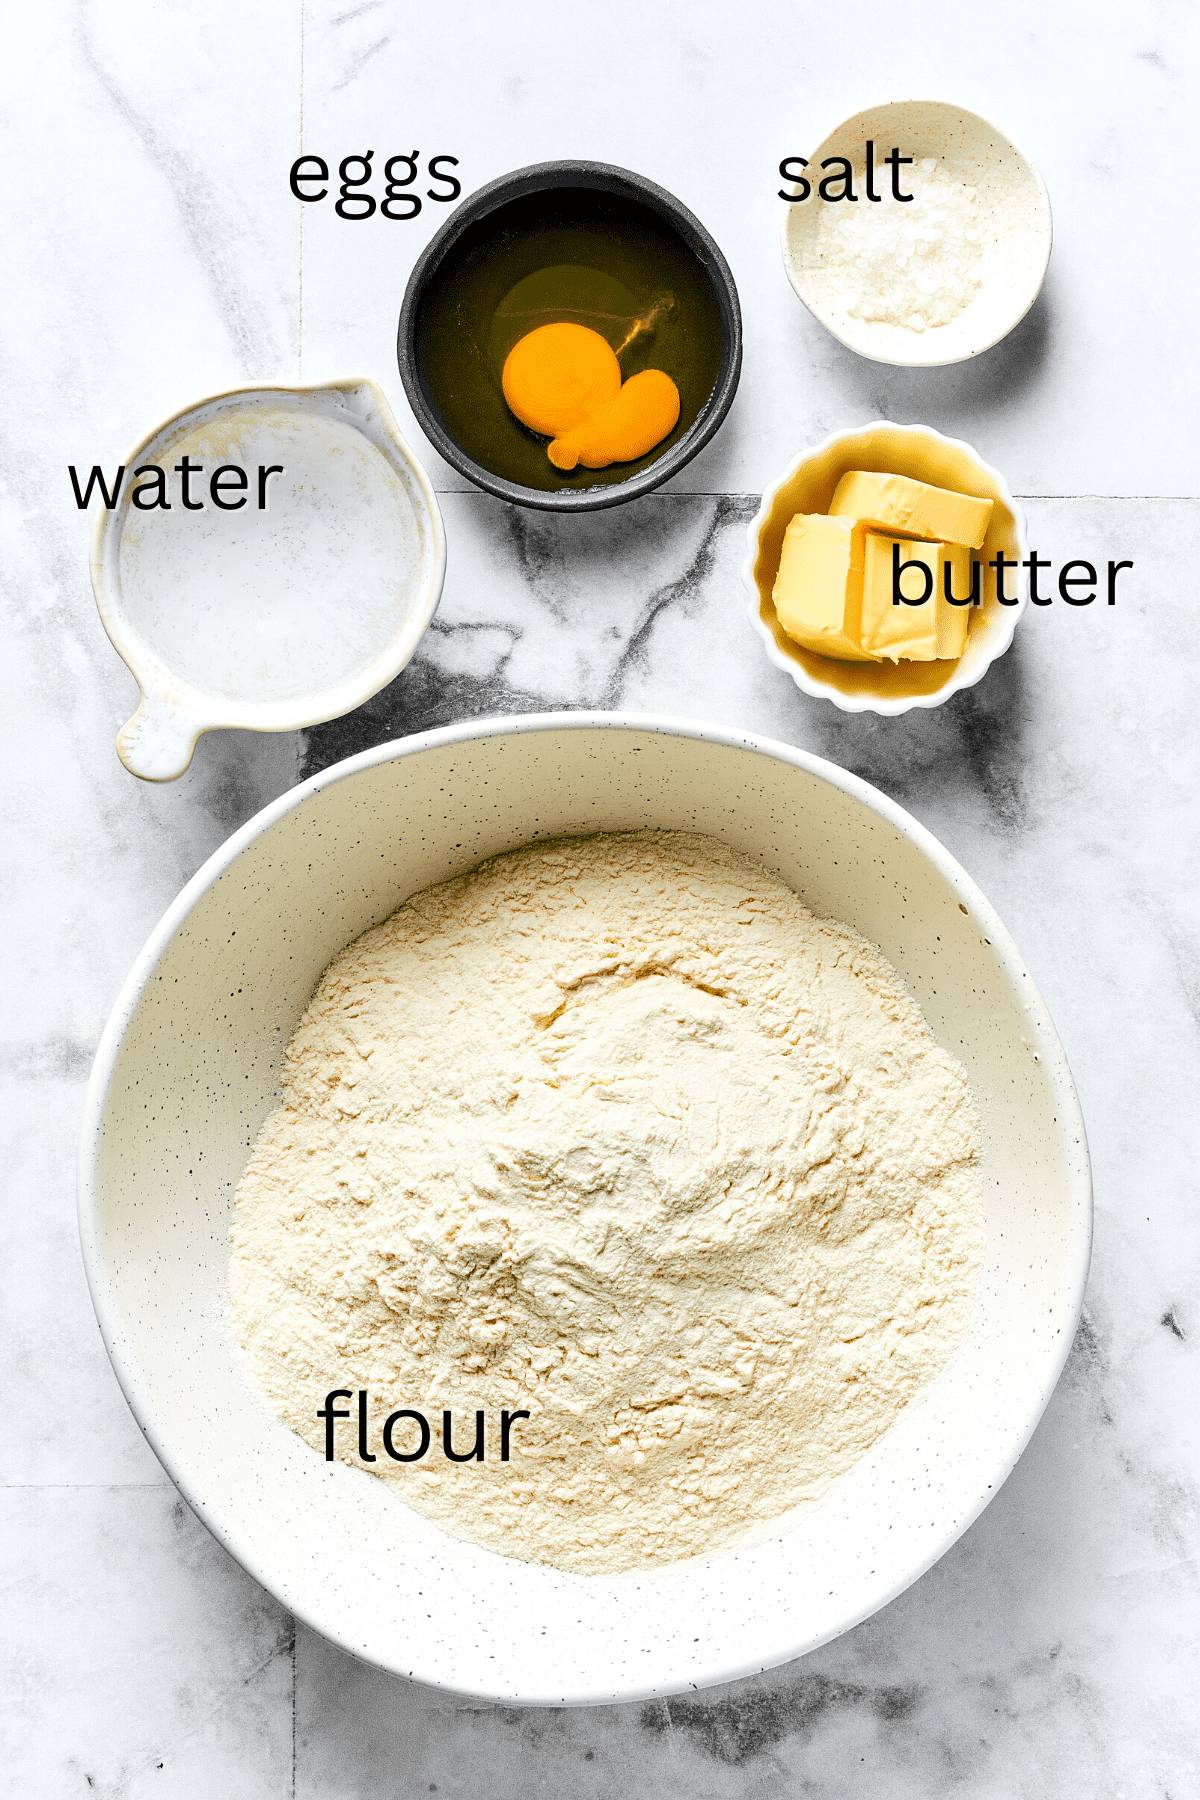 From top: Water, eggs, salt, butter, flour.